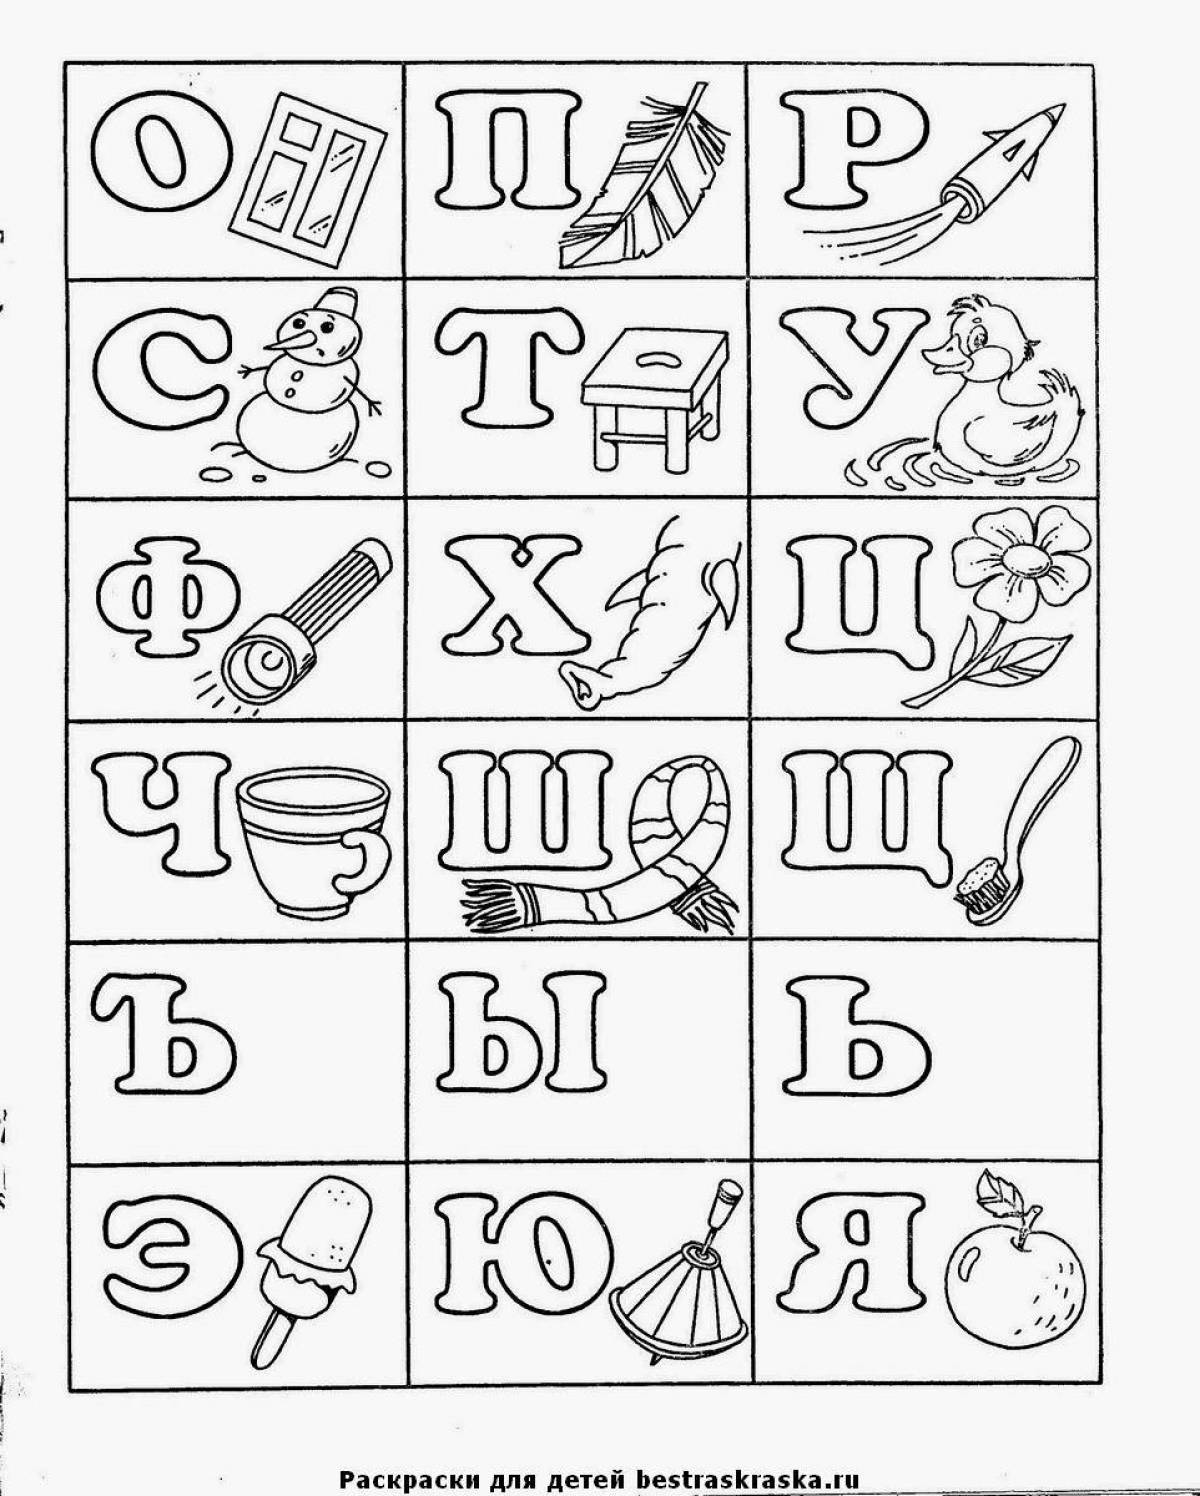 Творческая раскраска казахского алфавита